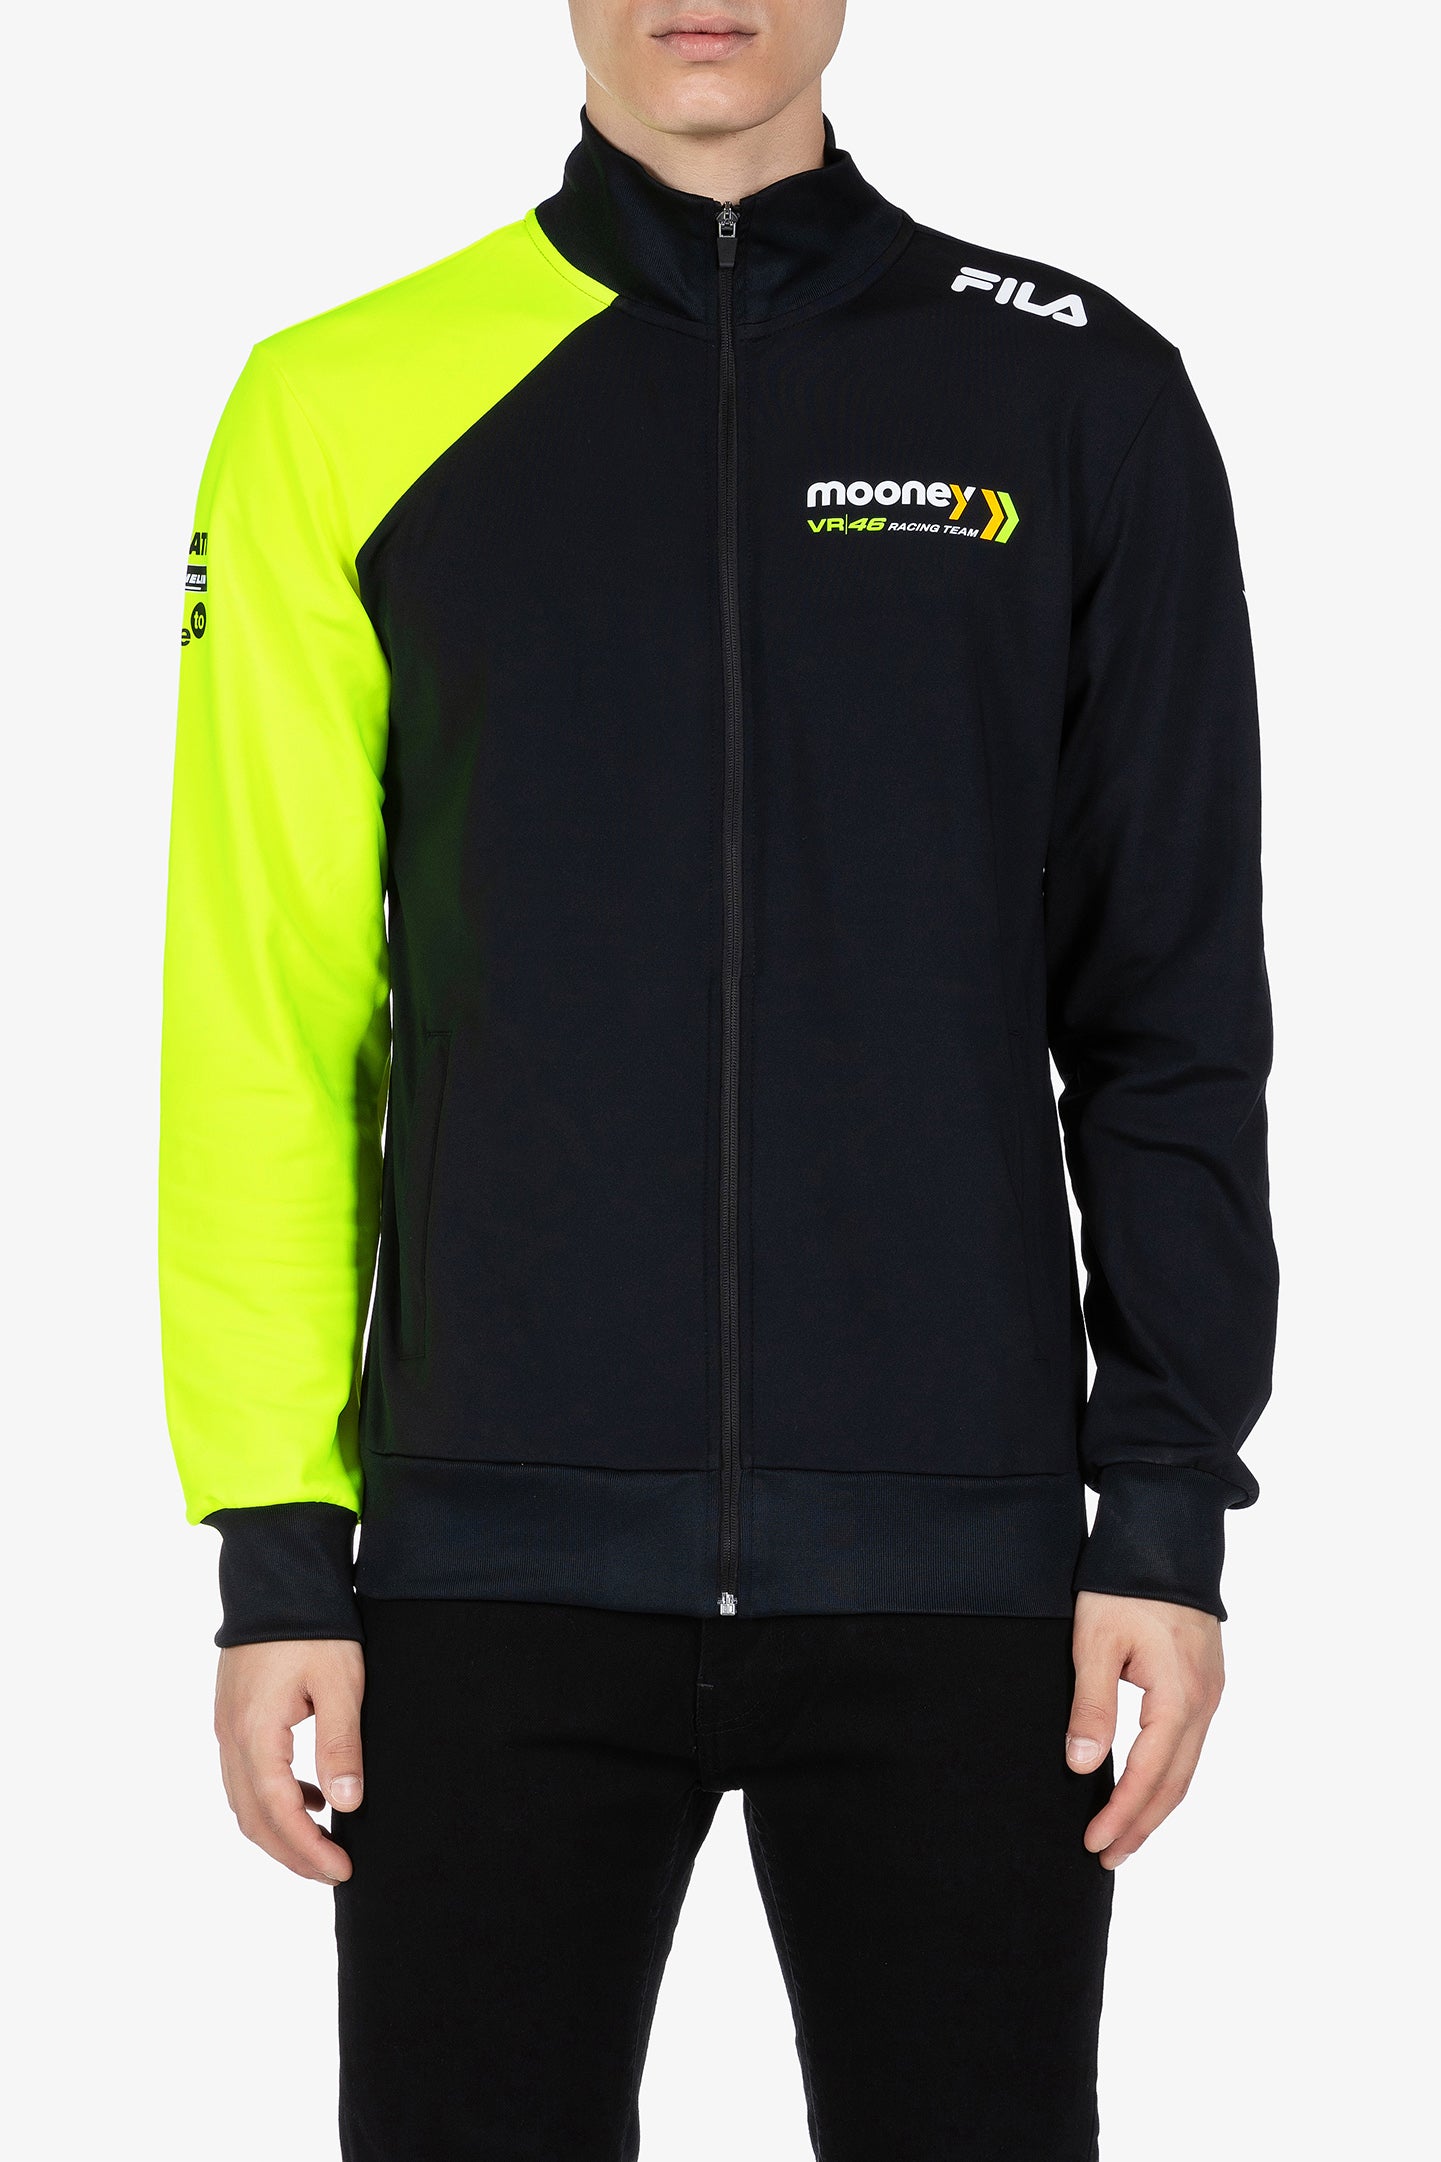 Mooney VR46 Racing Team replica sweatshirt